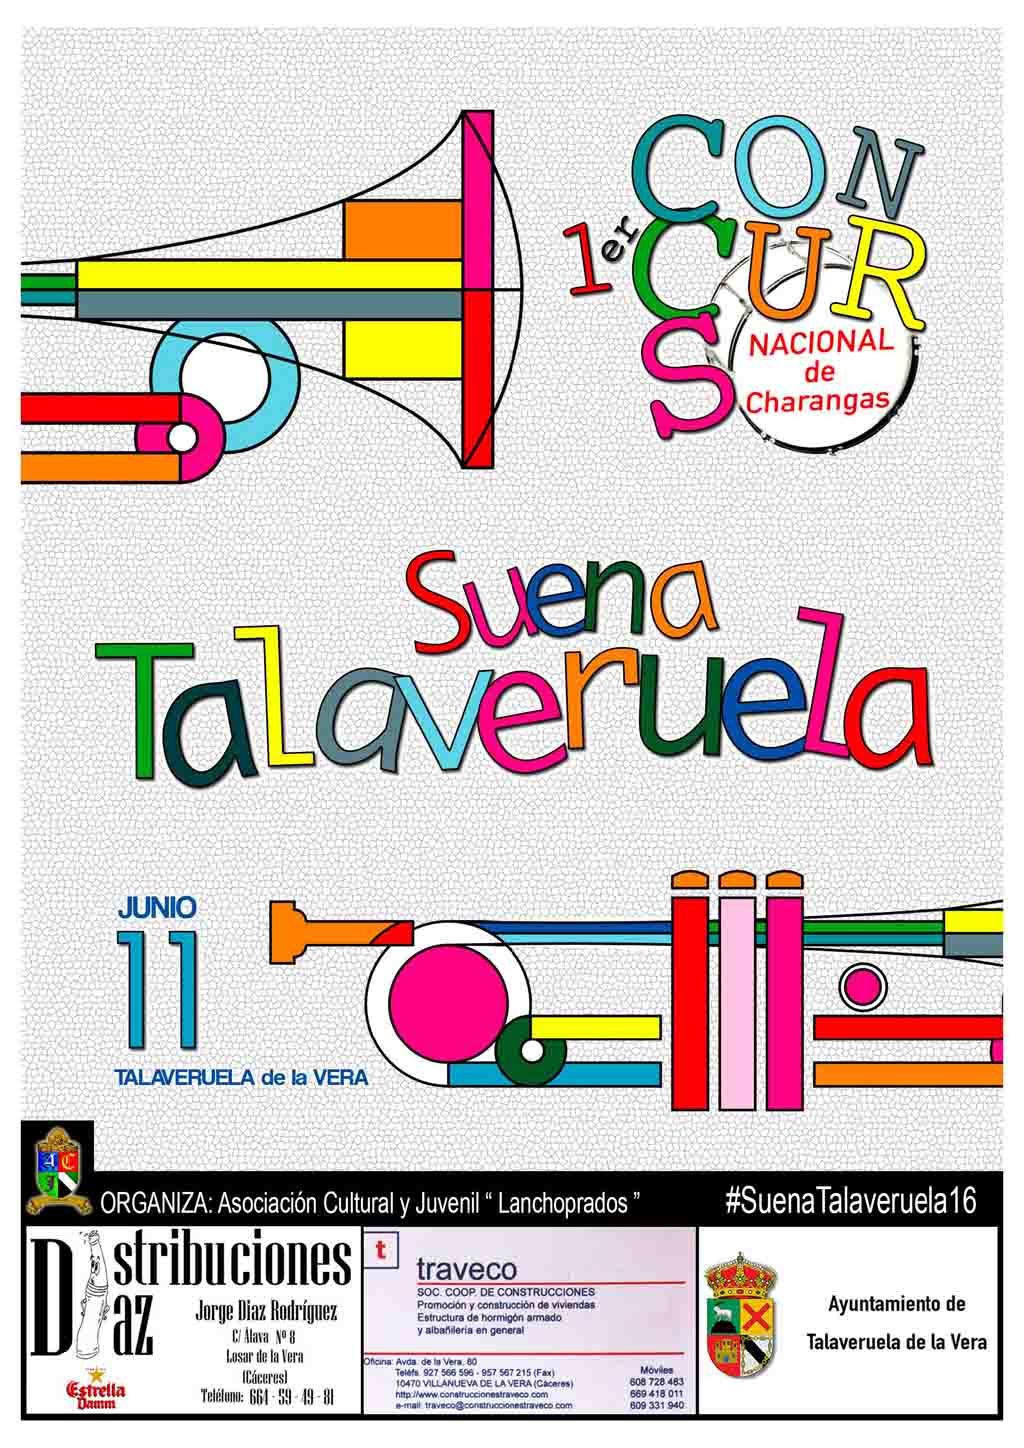 Concurso Nacional de Charangas “Suena Talaveruela”